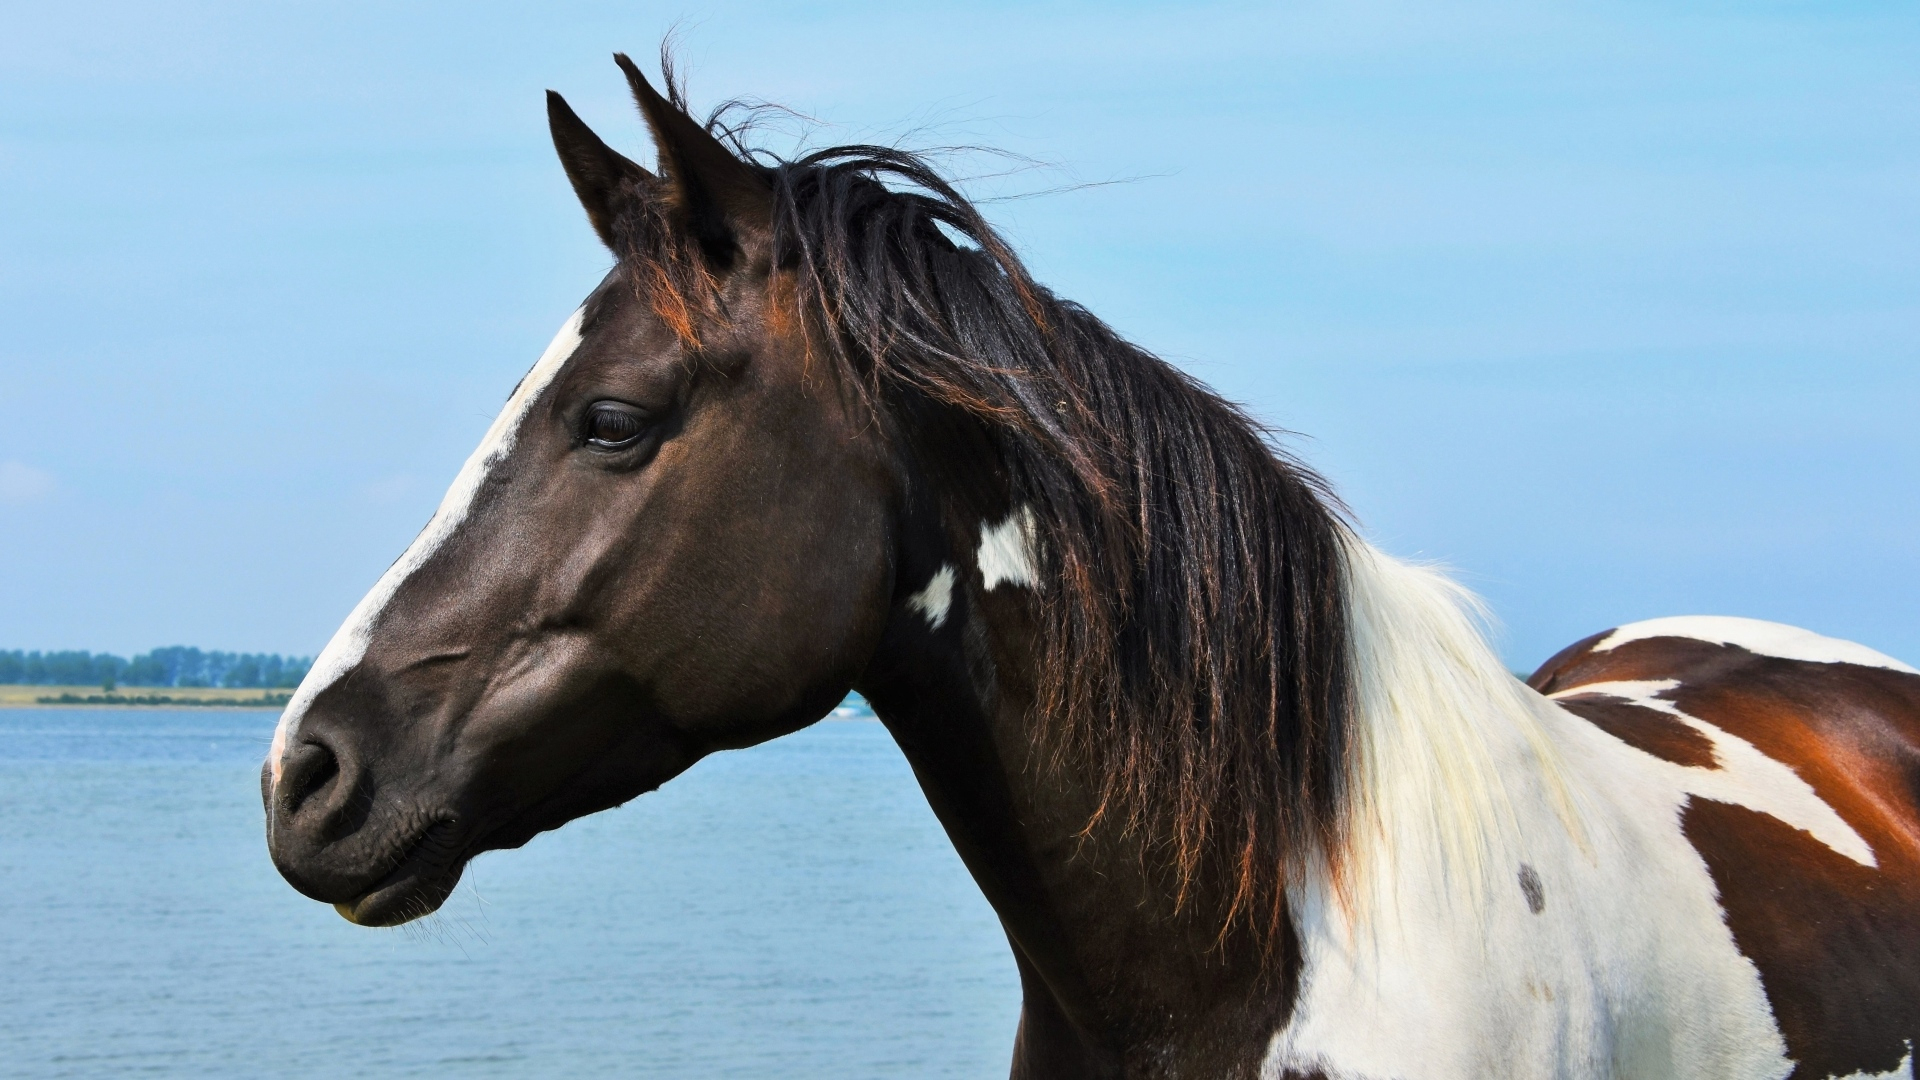 Hintergrundbilder Pferde Kostenlos bestimmt für Pferde Bilder Kostenlos Herunterladen